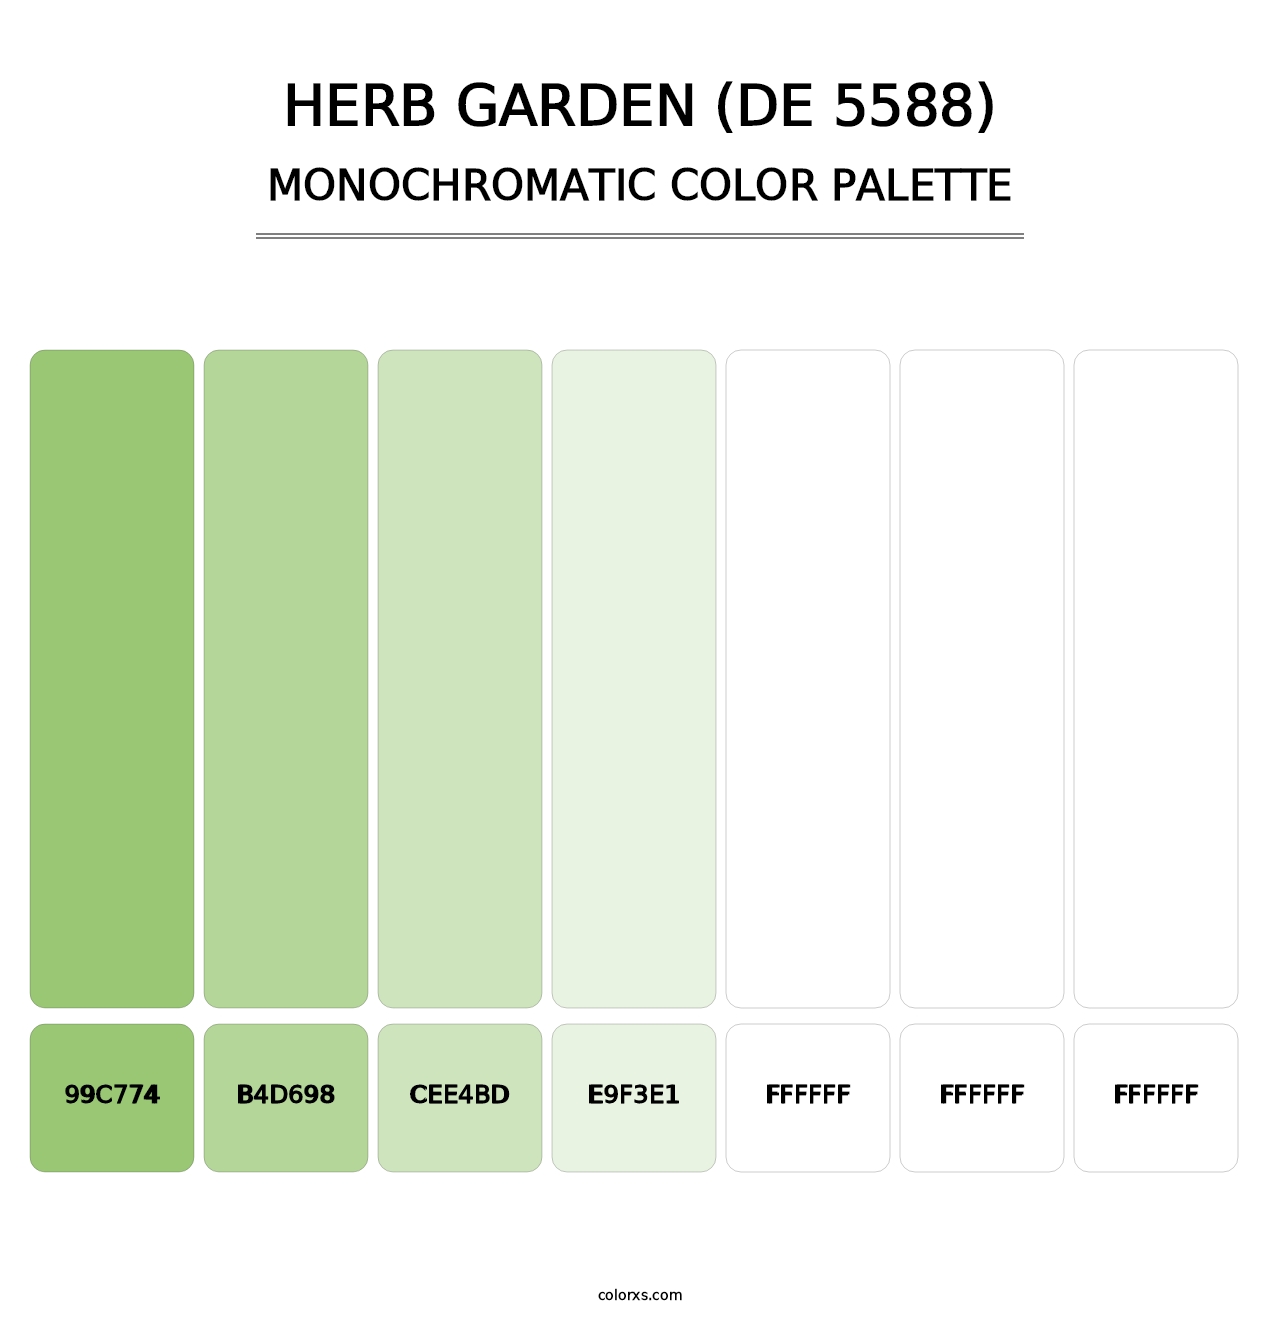 Herb Garden (DE 5588) - Monochromatic Color Palette